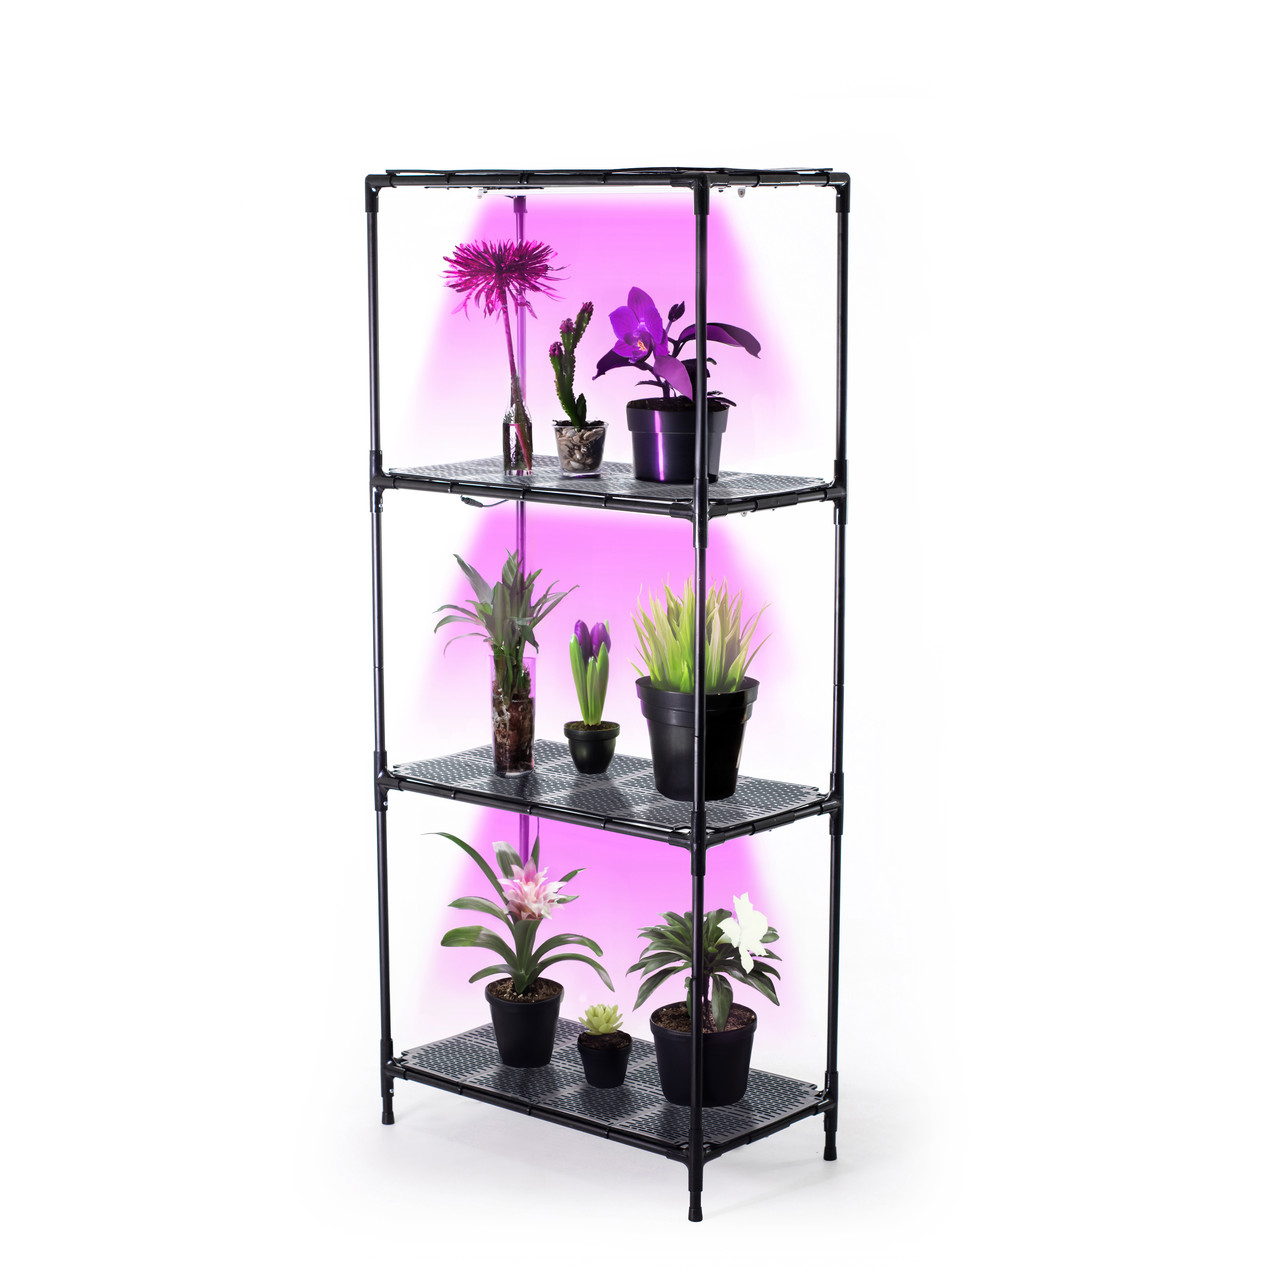 Підставка для квітів, Полиця-стелаж для рослин з вбудованим фіто світлом Lima 60 Bicolor